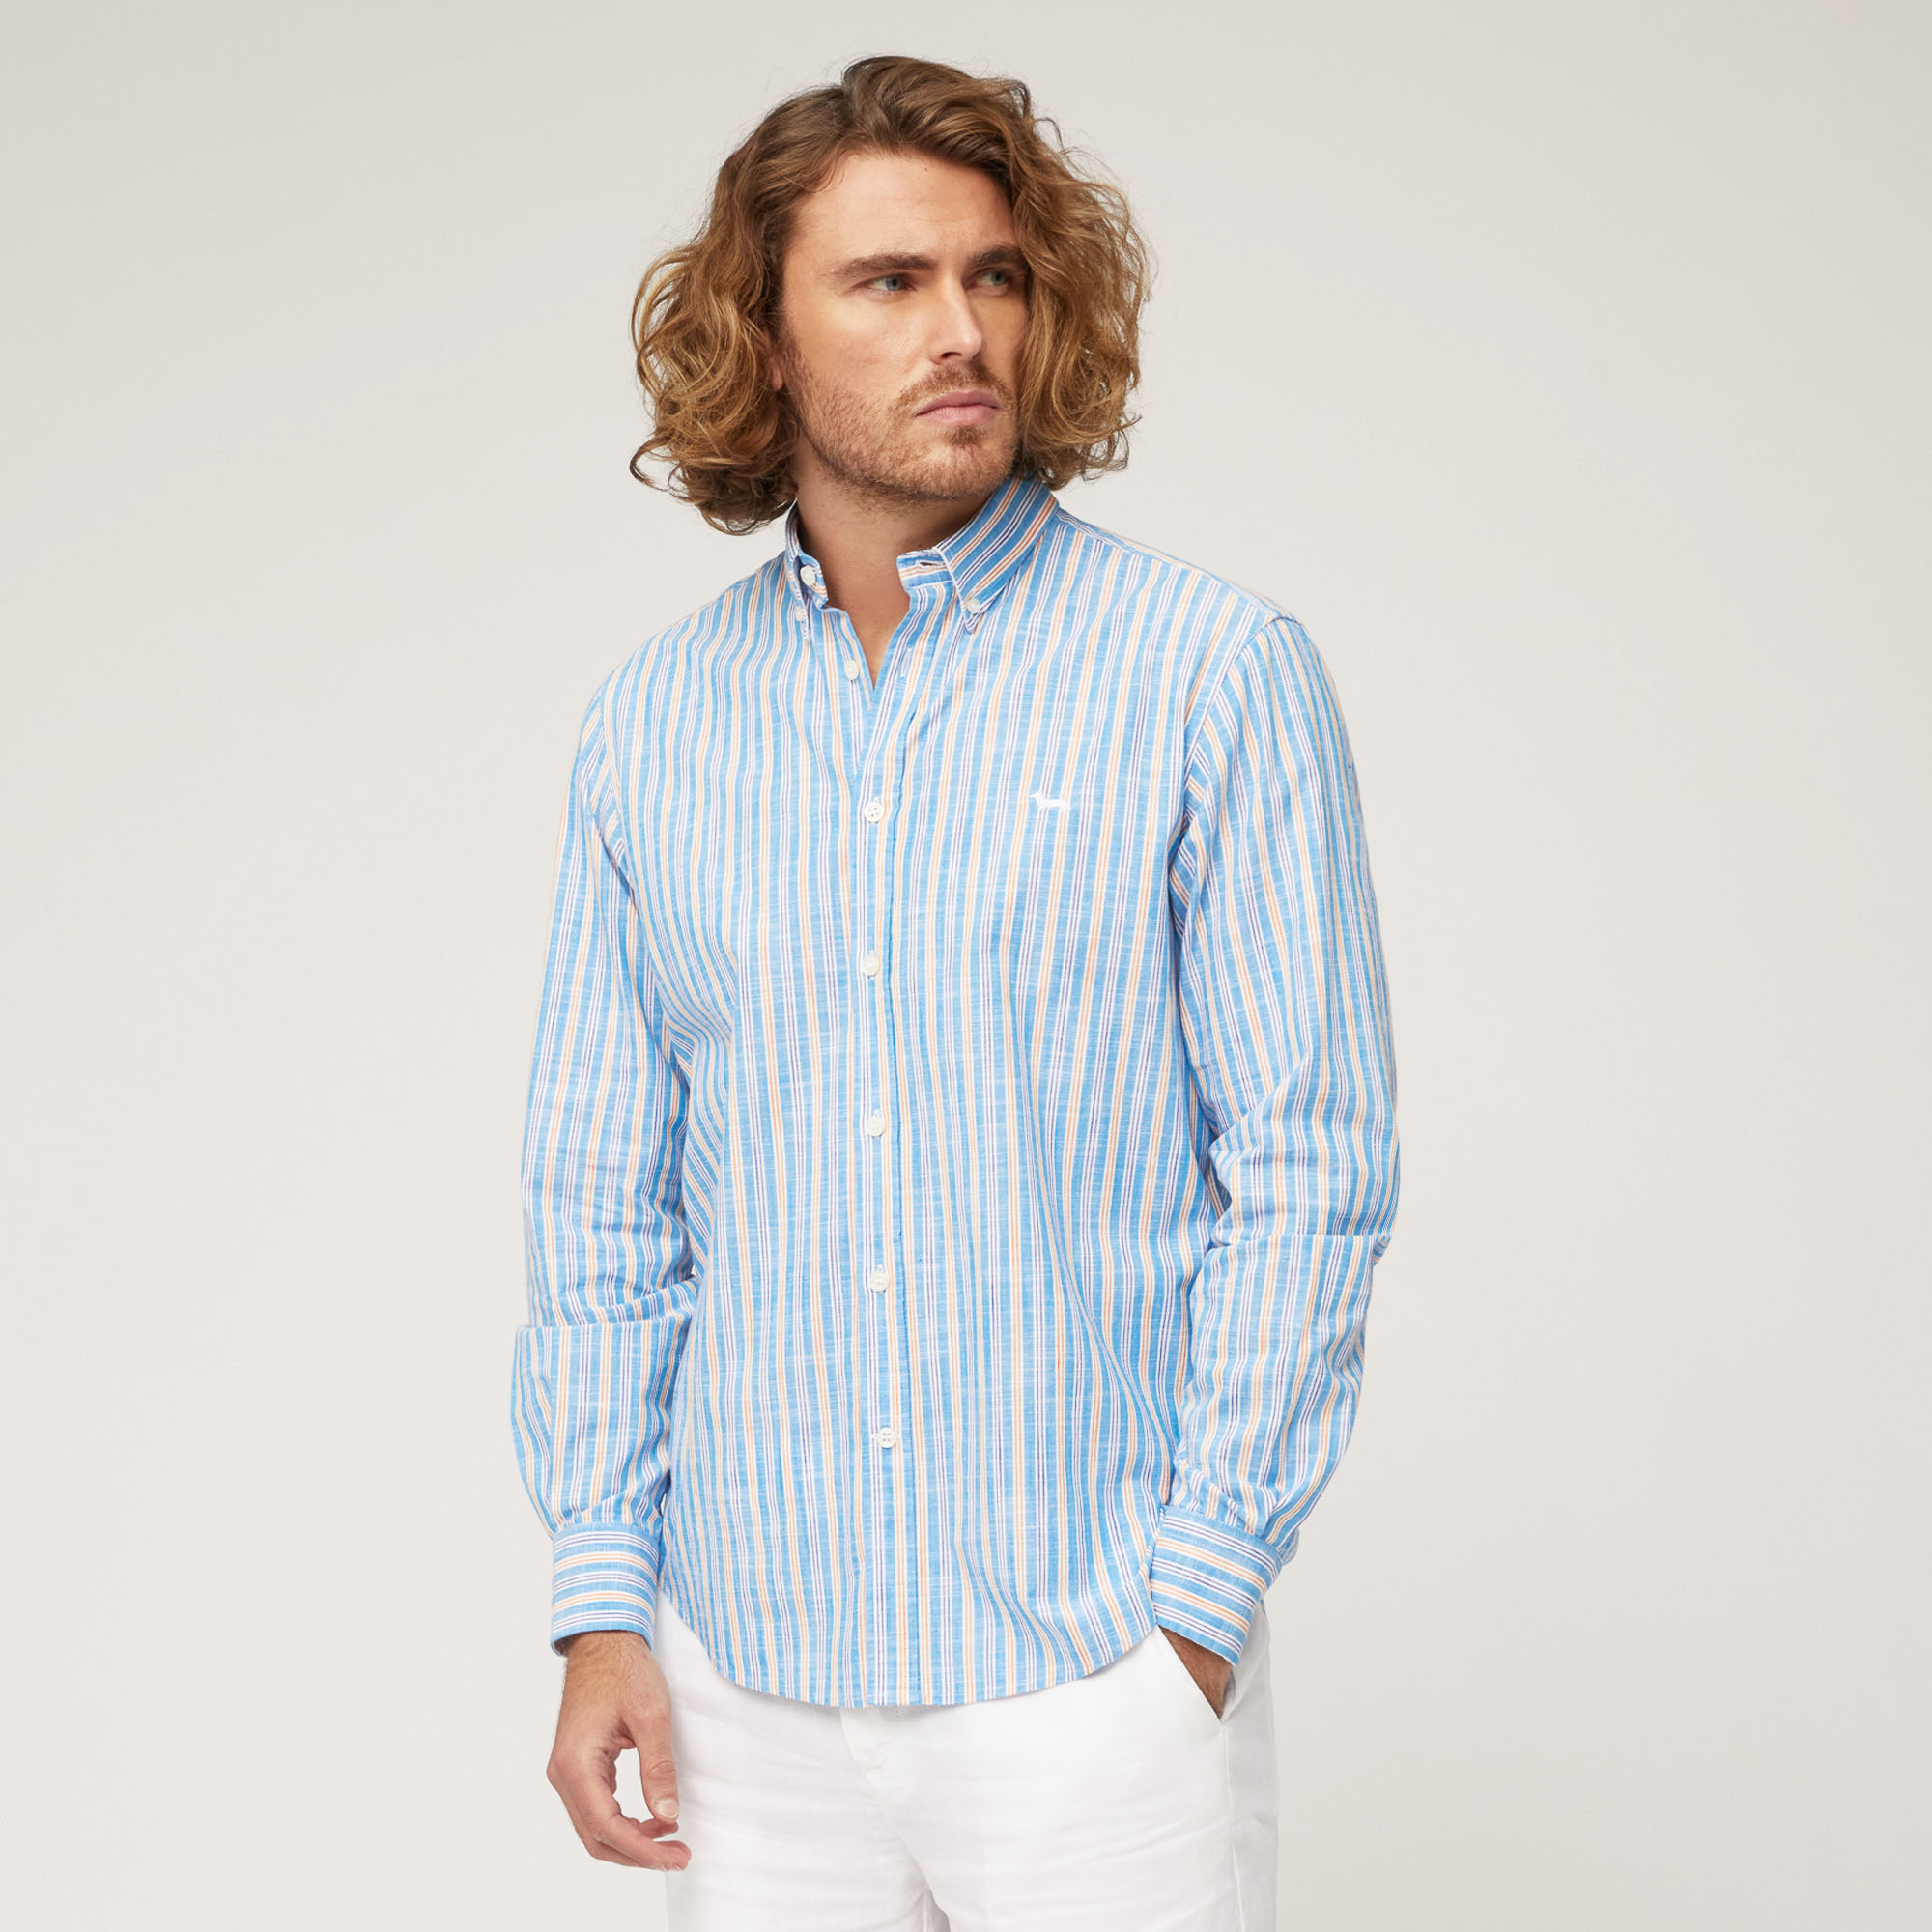 Camicia In Cotone Fiammato A Righe, Azzurro, large